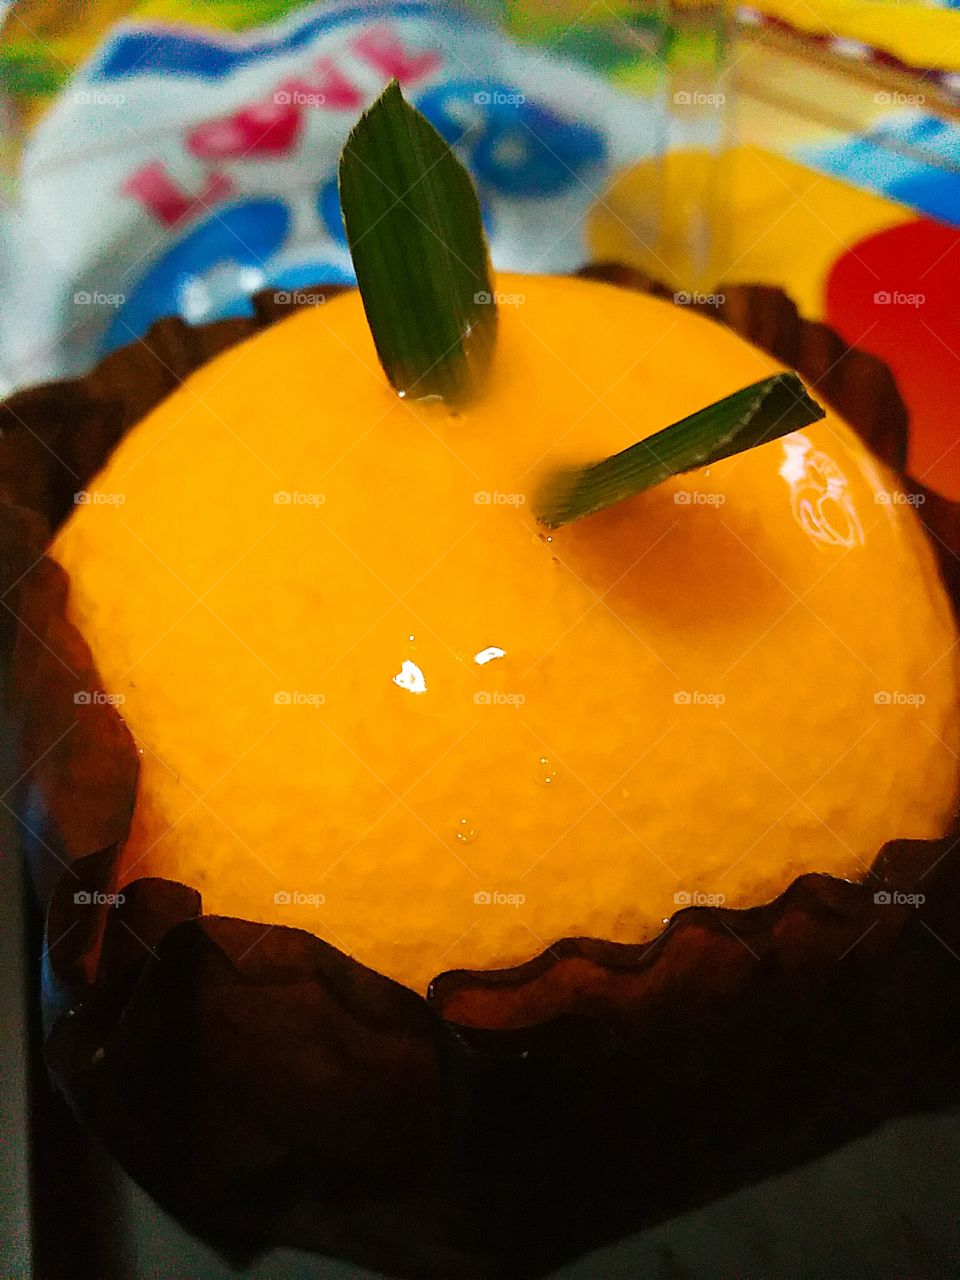 "Orange cake"